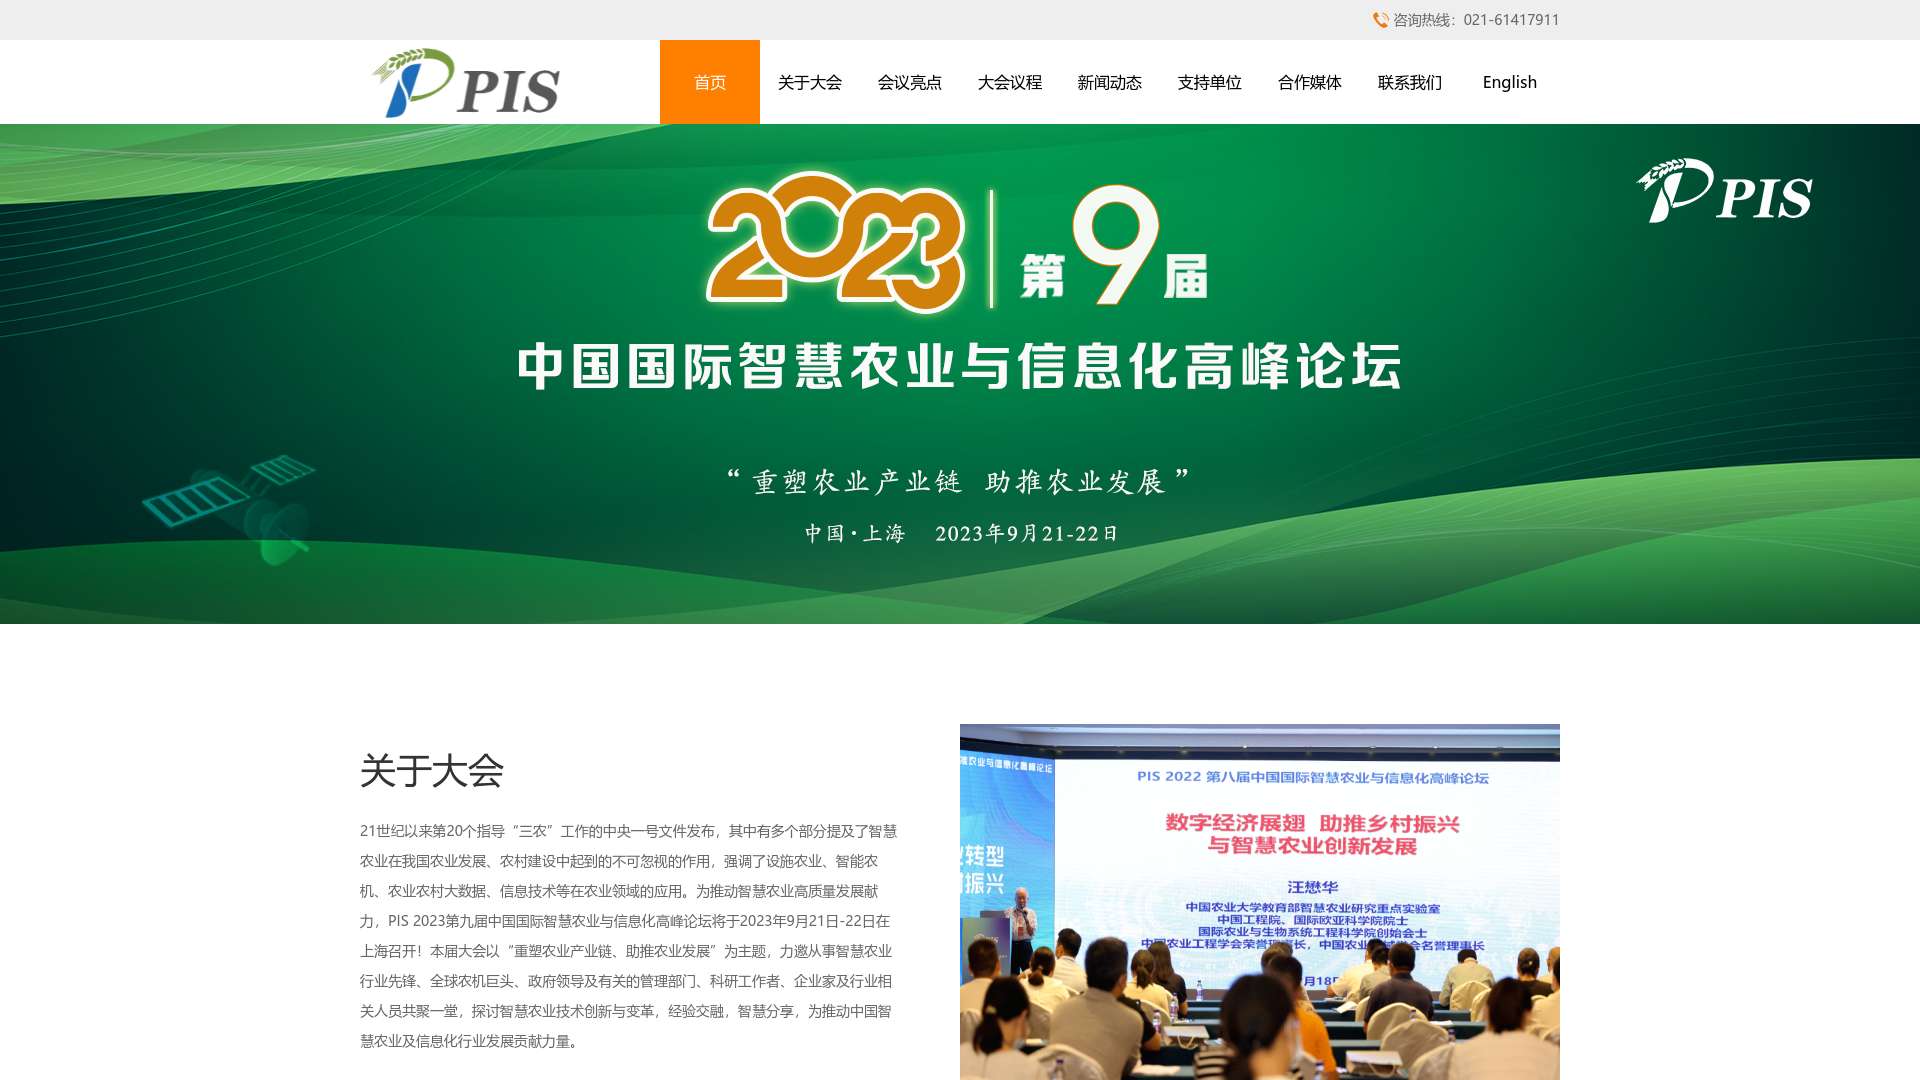 PIS中国国际精准农业与信息化高峰论坛截图时间：2023-07-16